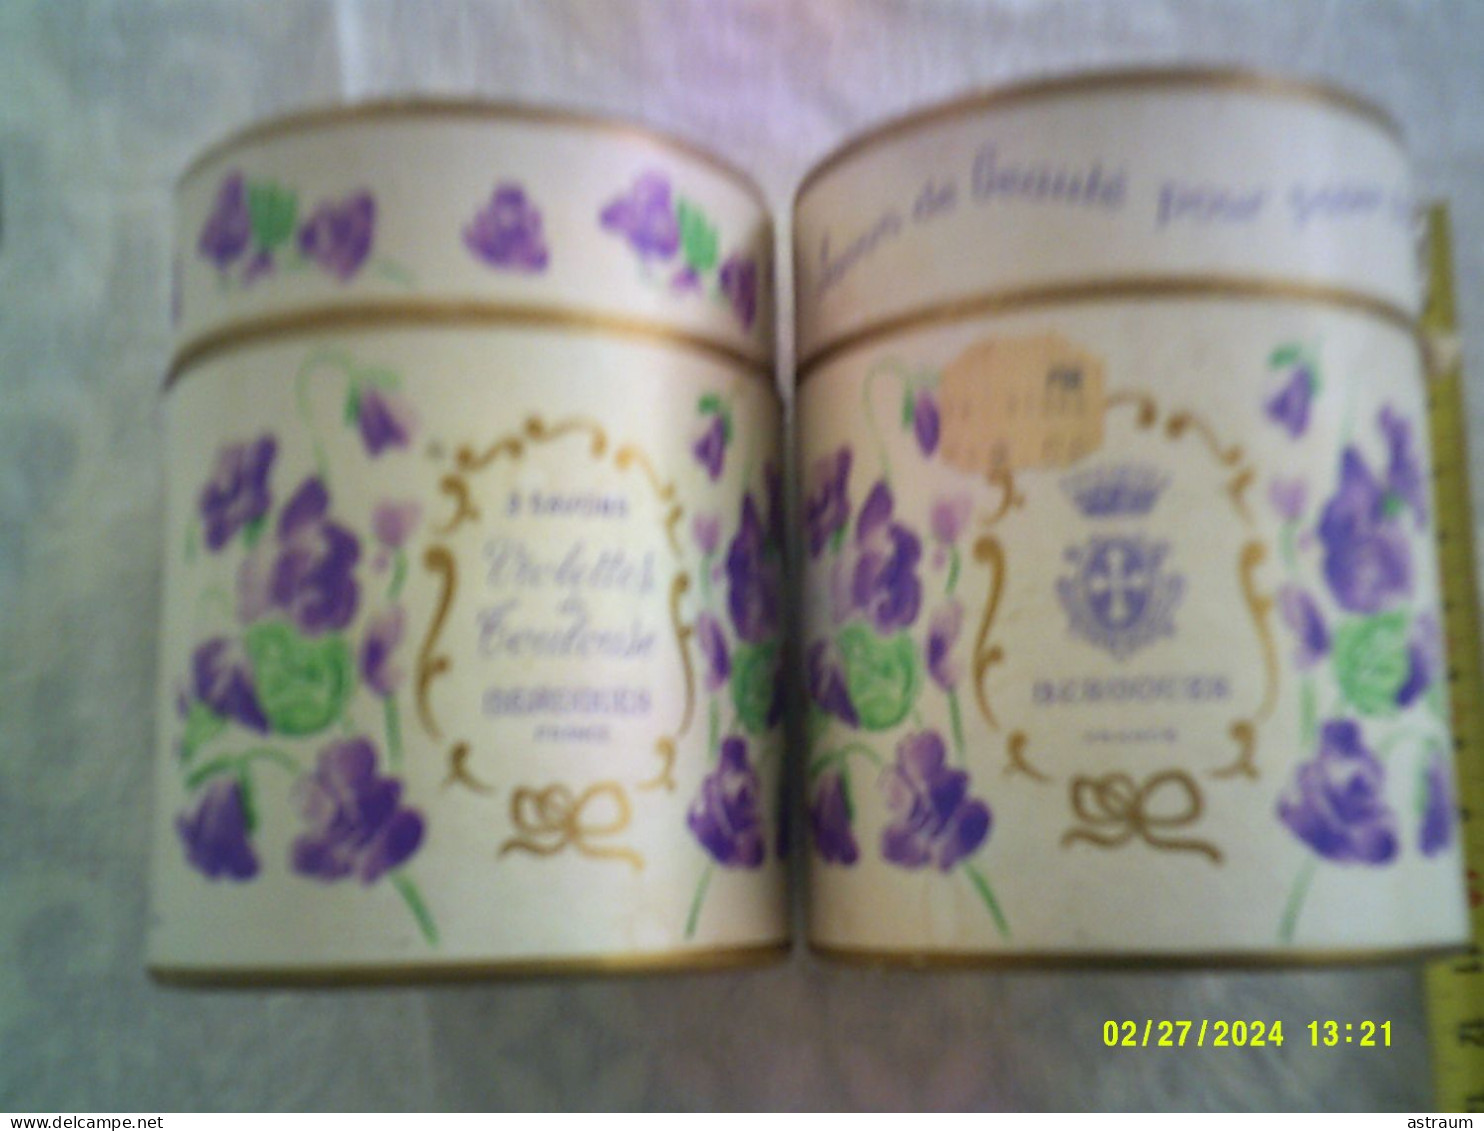 2 Coffret Vintage Parfum - Berdoues - Violettes De Toulouse - 80ml + 1 Boite Avec 1 Savon - Mignon Di Profumo Donna (con Box)